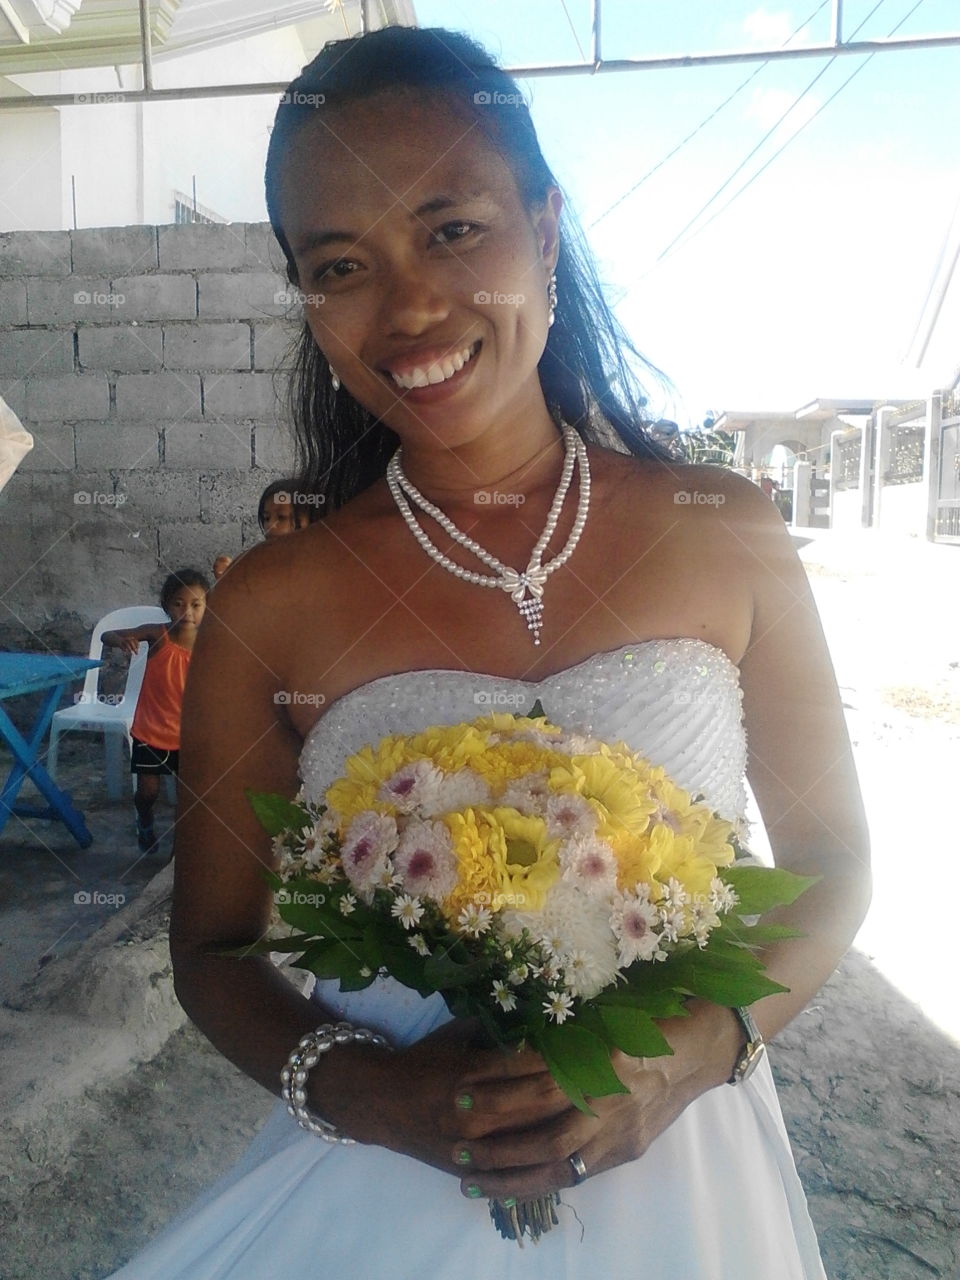 wedding attire, wedding flower bouquet, necklace, bracelet